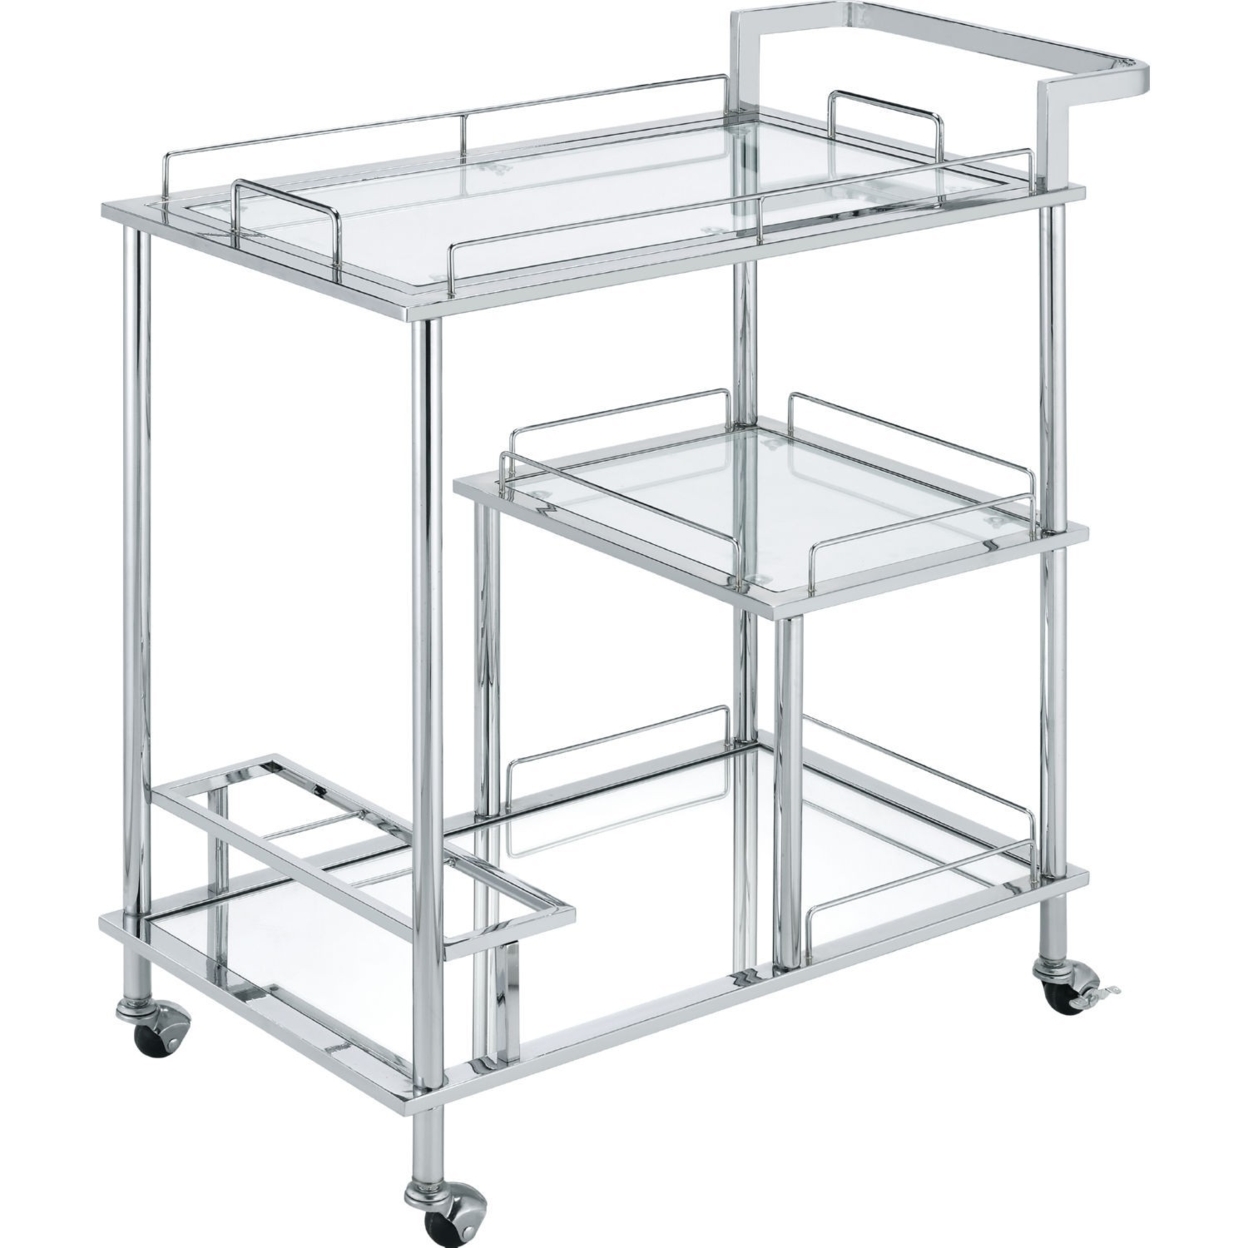 3 Tier Serving Cart With Glass Shelves And Metal Frame, Chrome- Saltoro Sherpi